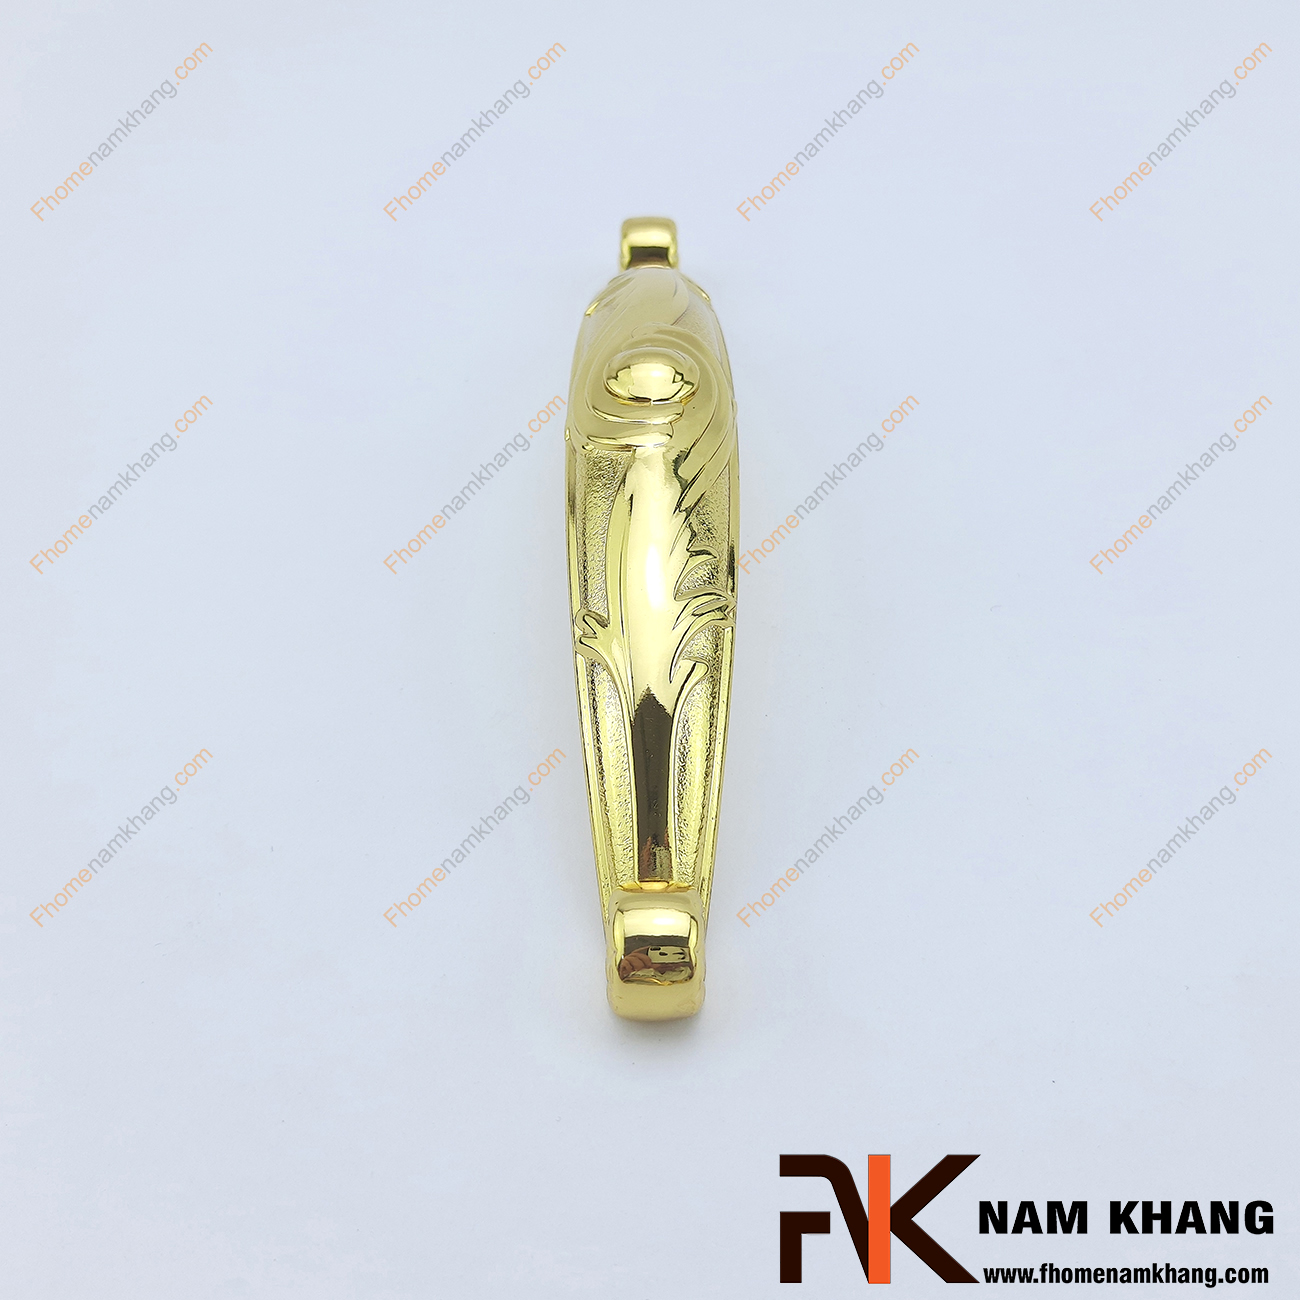 Tay nắm tủ lá xoắn mạ vàng NK129, một sản phẩm phụ kiện cửa tủ chất lượng từ hợp kim cao cấp.